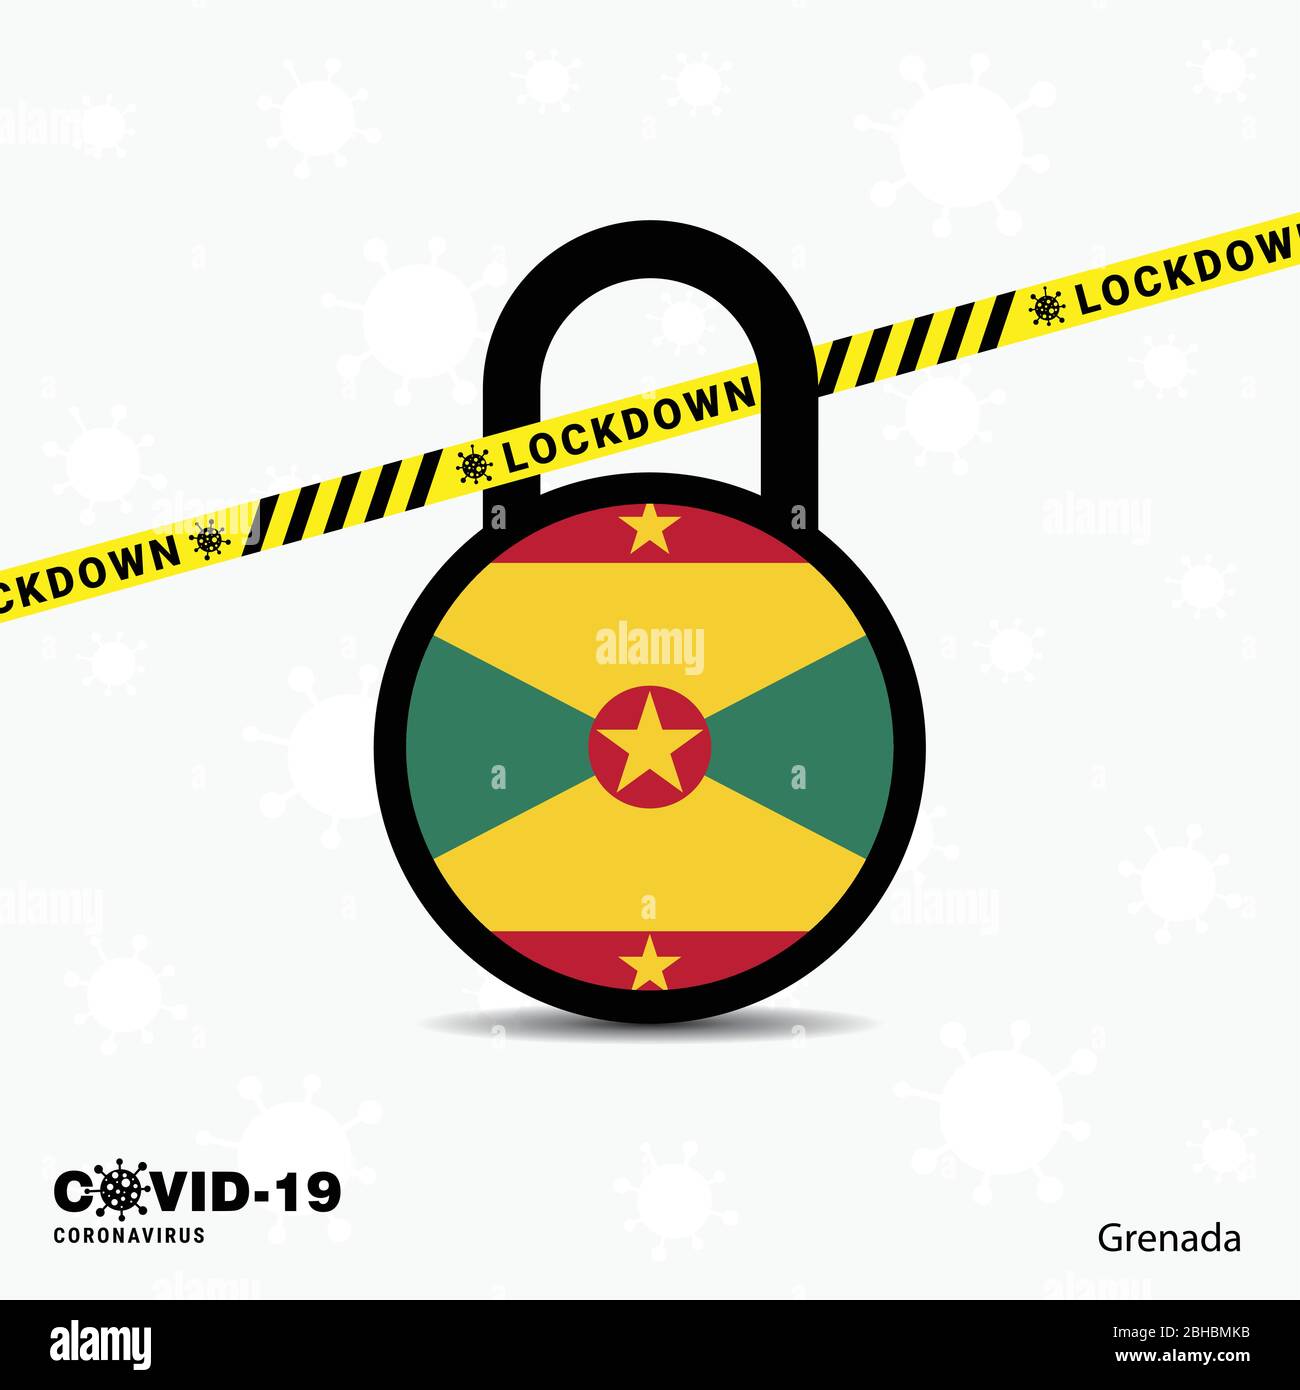 Grenada Lock DOwn Lock Coronavirus pandemic awareness Template. COVID-19 Lock Down Design Stock Vector